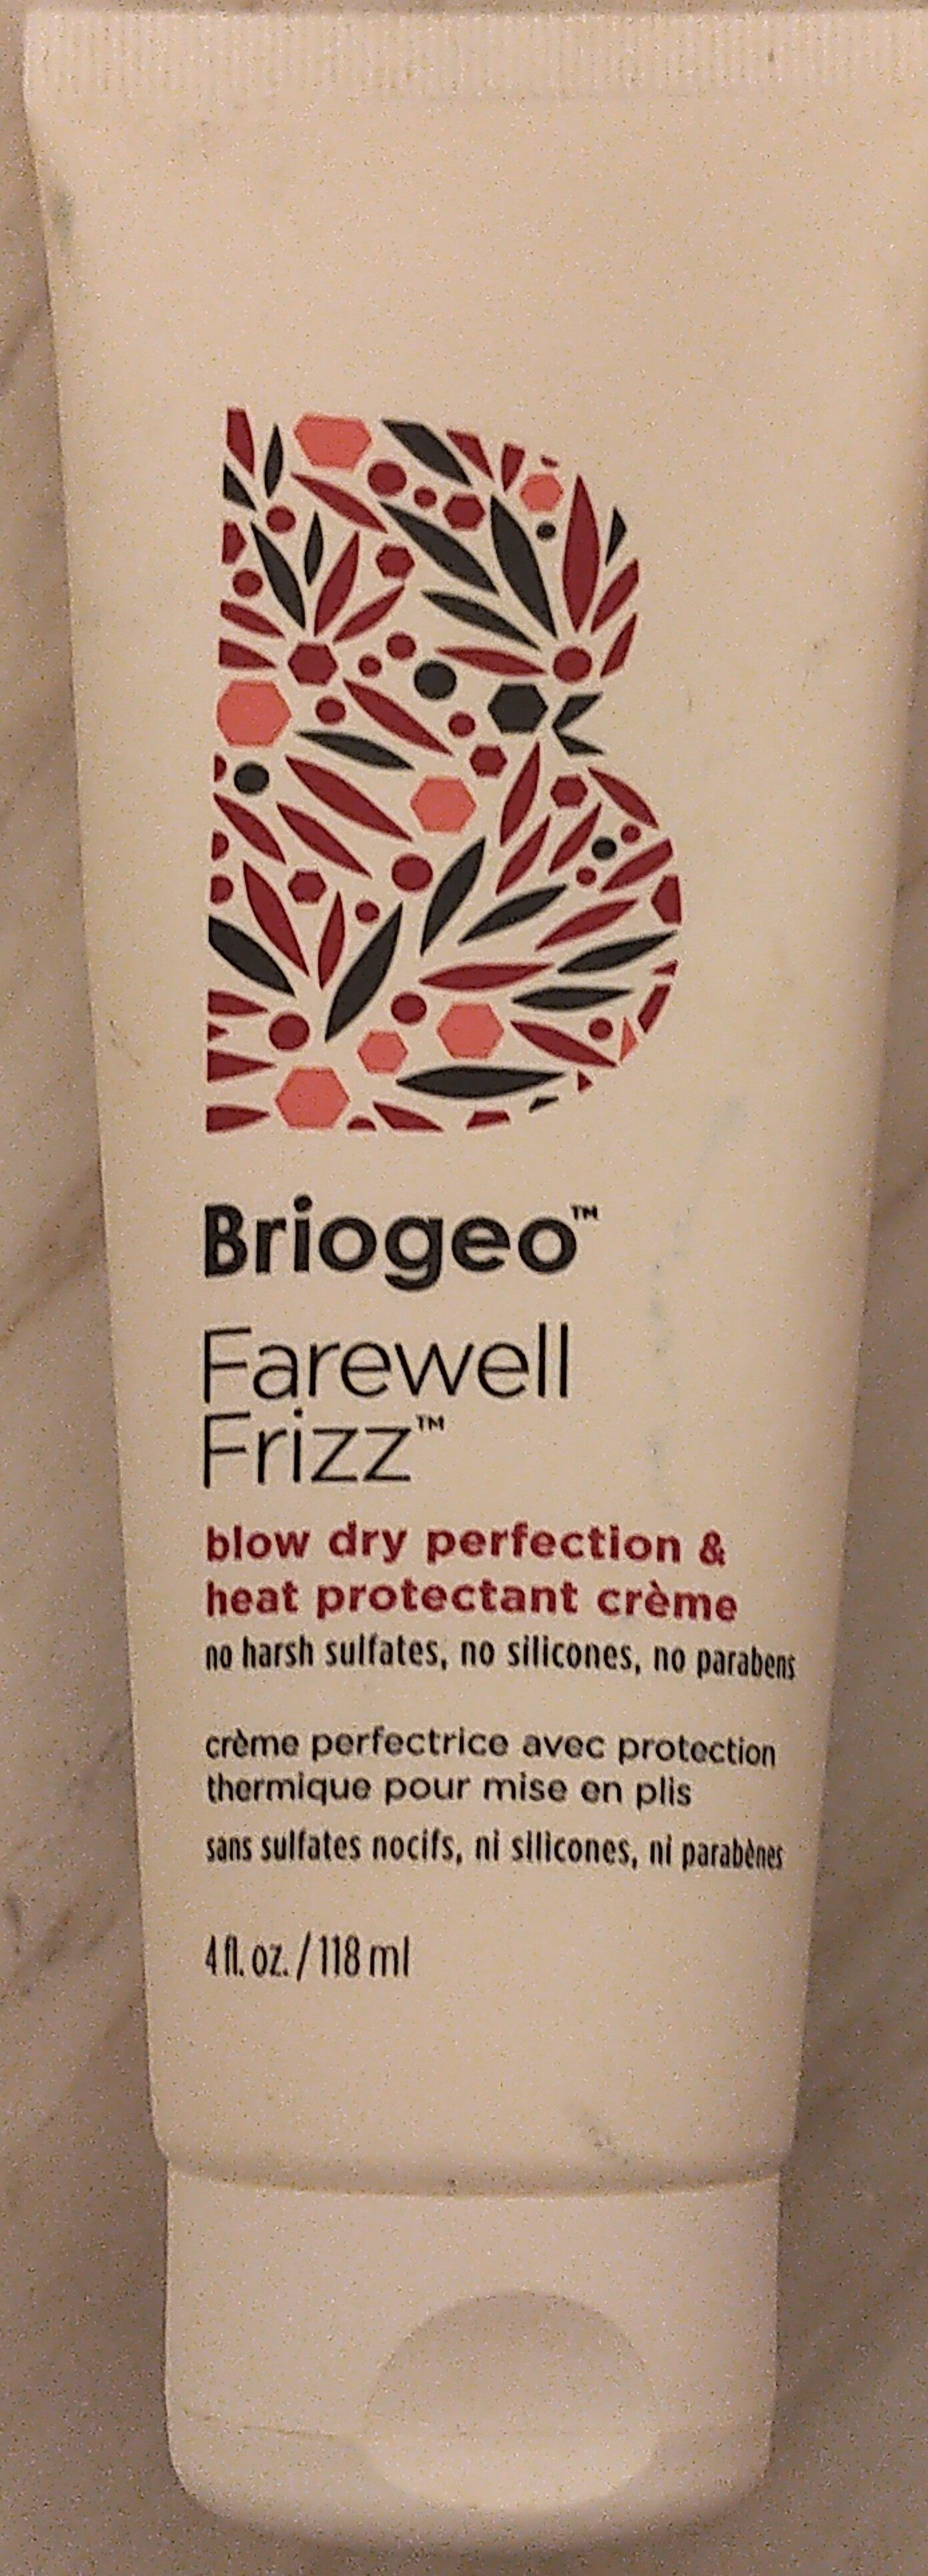 Briogeo Farewell Frizz Blow Dry Perfection & Heat Protectant Crème - Продукт - en